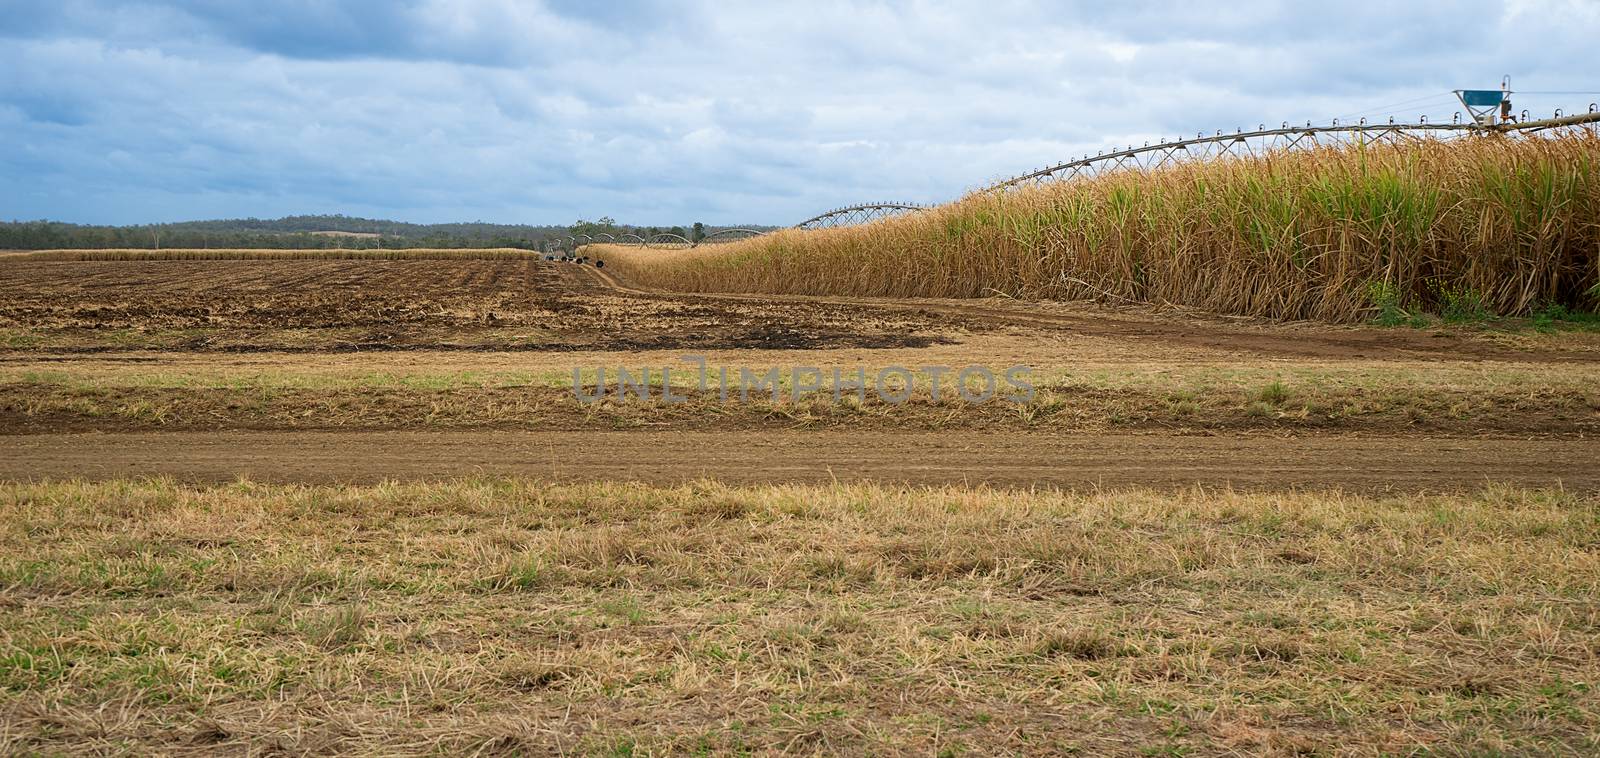 Australian Sugarcane Farm by sherj